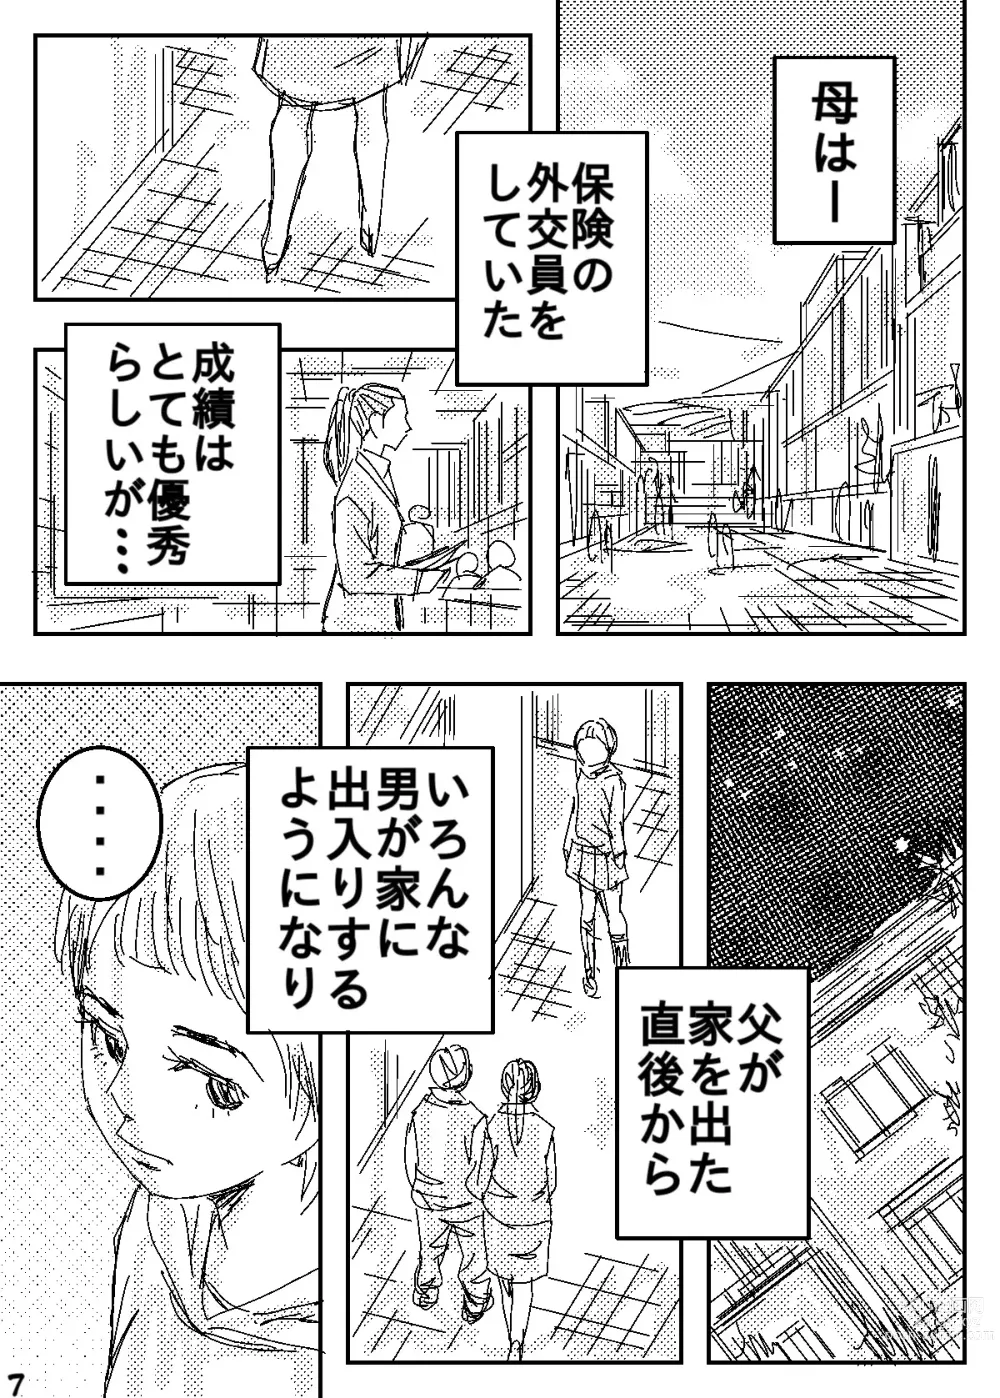 Page 7 of doujinshi Gesu no Kiwami Kazoku